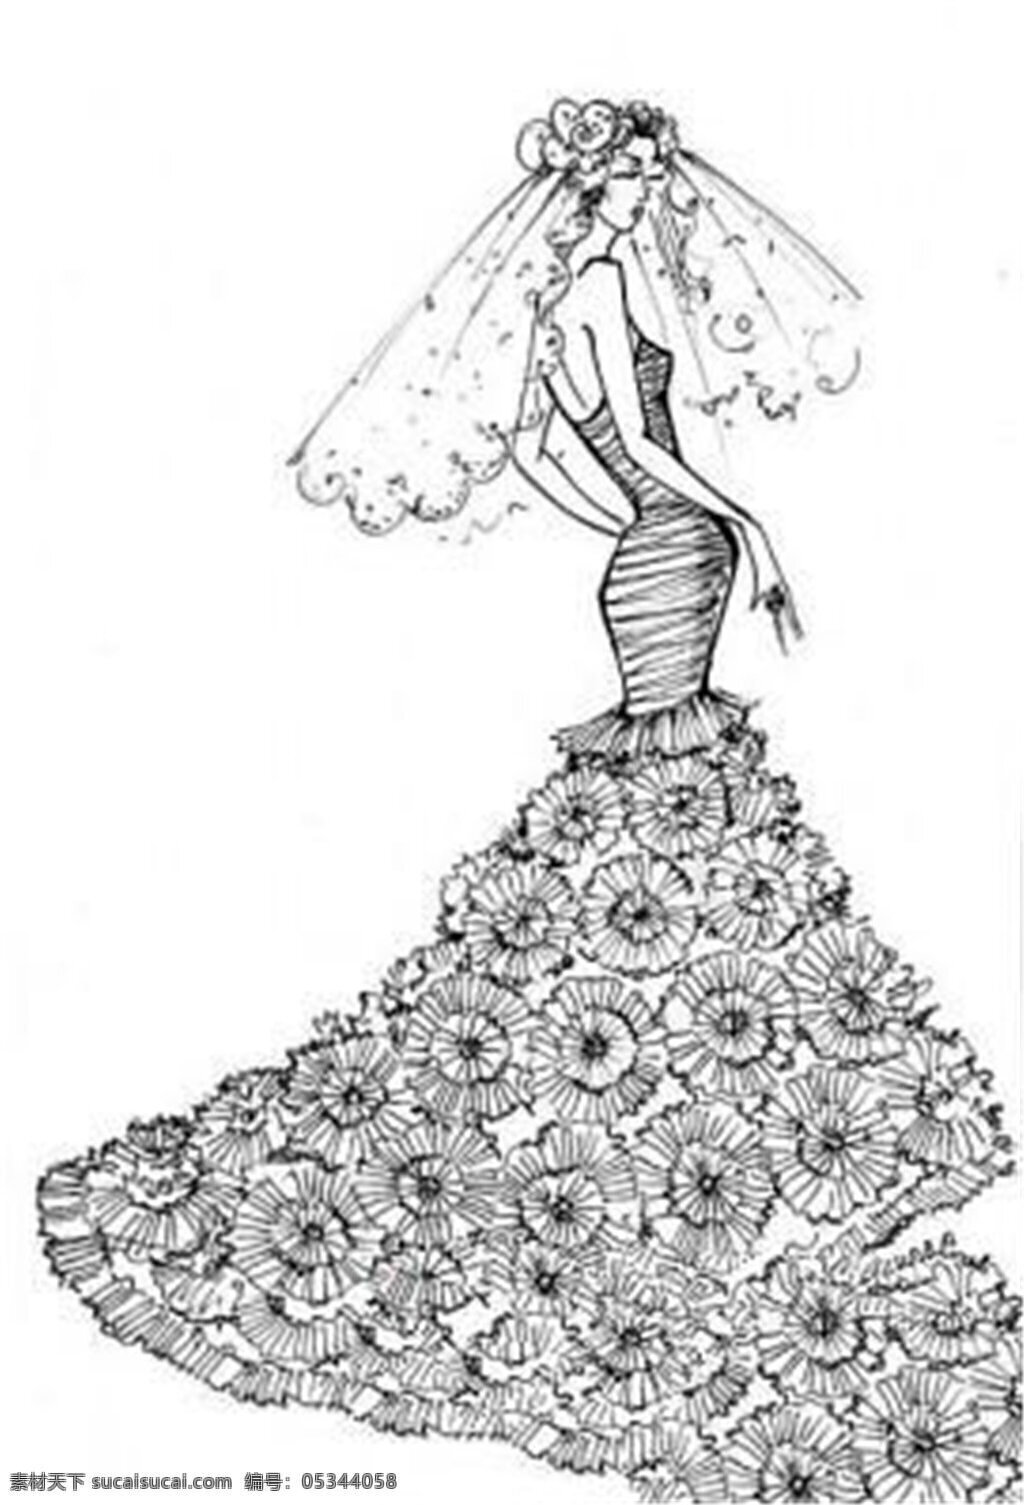 花朵 长裙 线 稿 图 服装设计 时尚女装 职业女装 职业装 女装设计 效果图 短裙 服装 服装效果图 连衣裙 黑白线稿